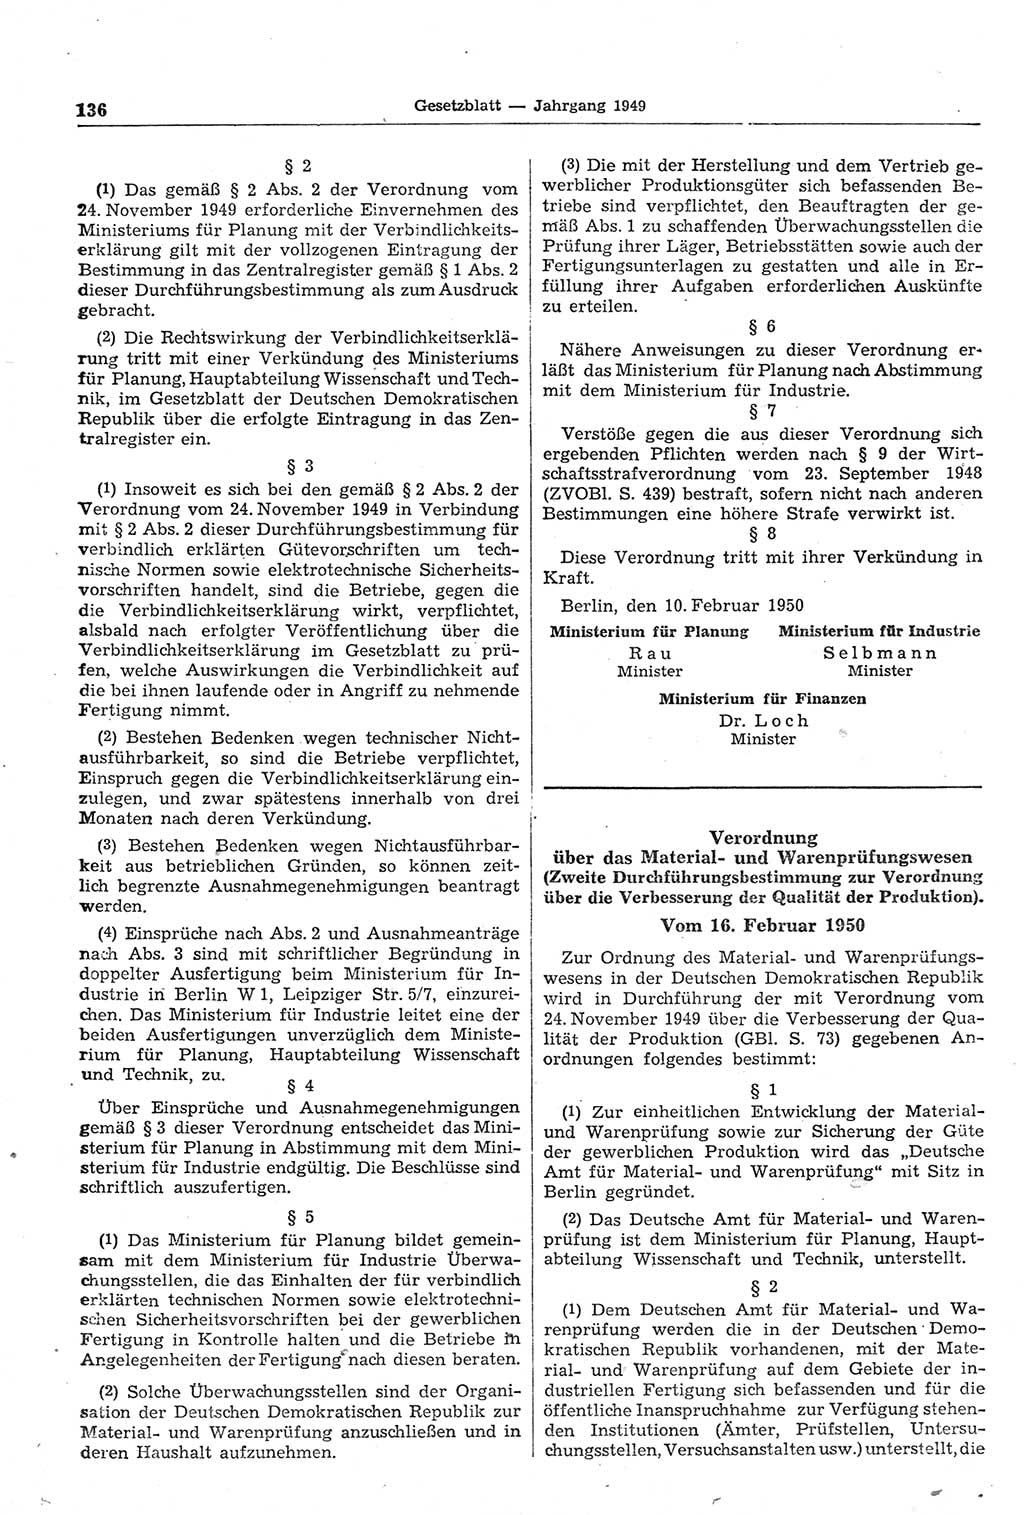 Gesetzblatt (GBl.) der Deutschen Demokratischen Republik (DDR) 1950, Seite 136 (GBl. DDR 1950, S. 136)